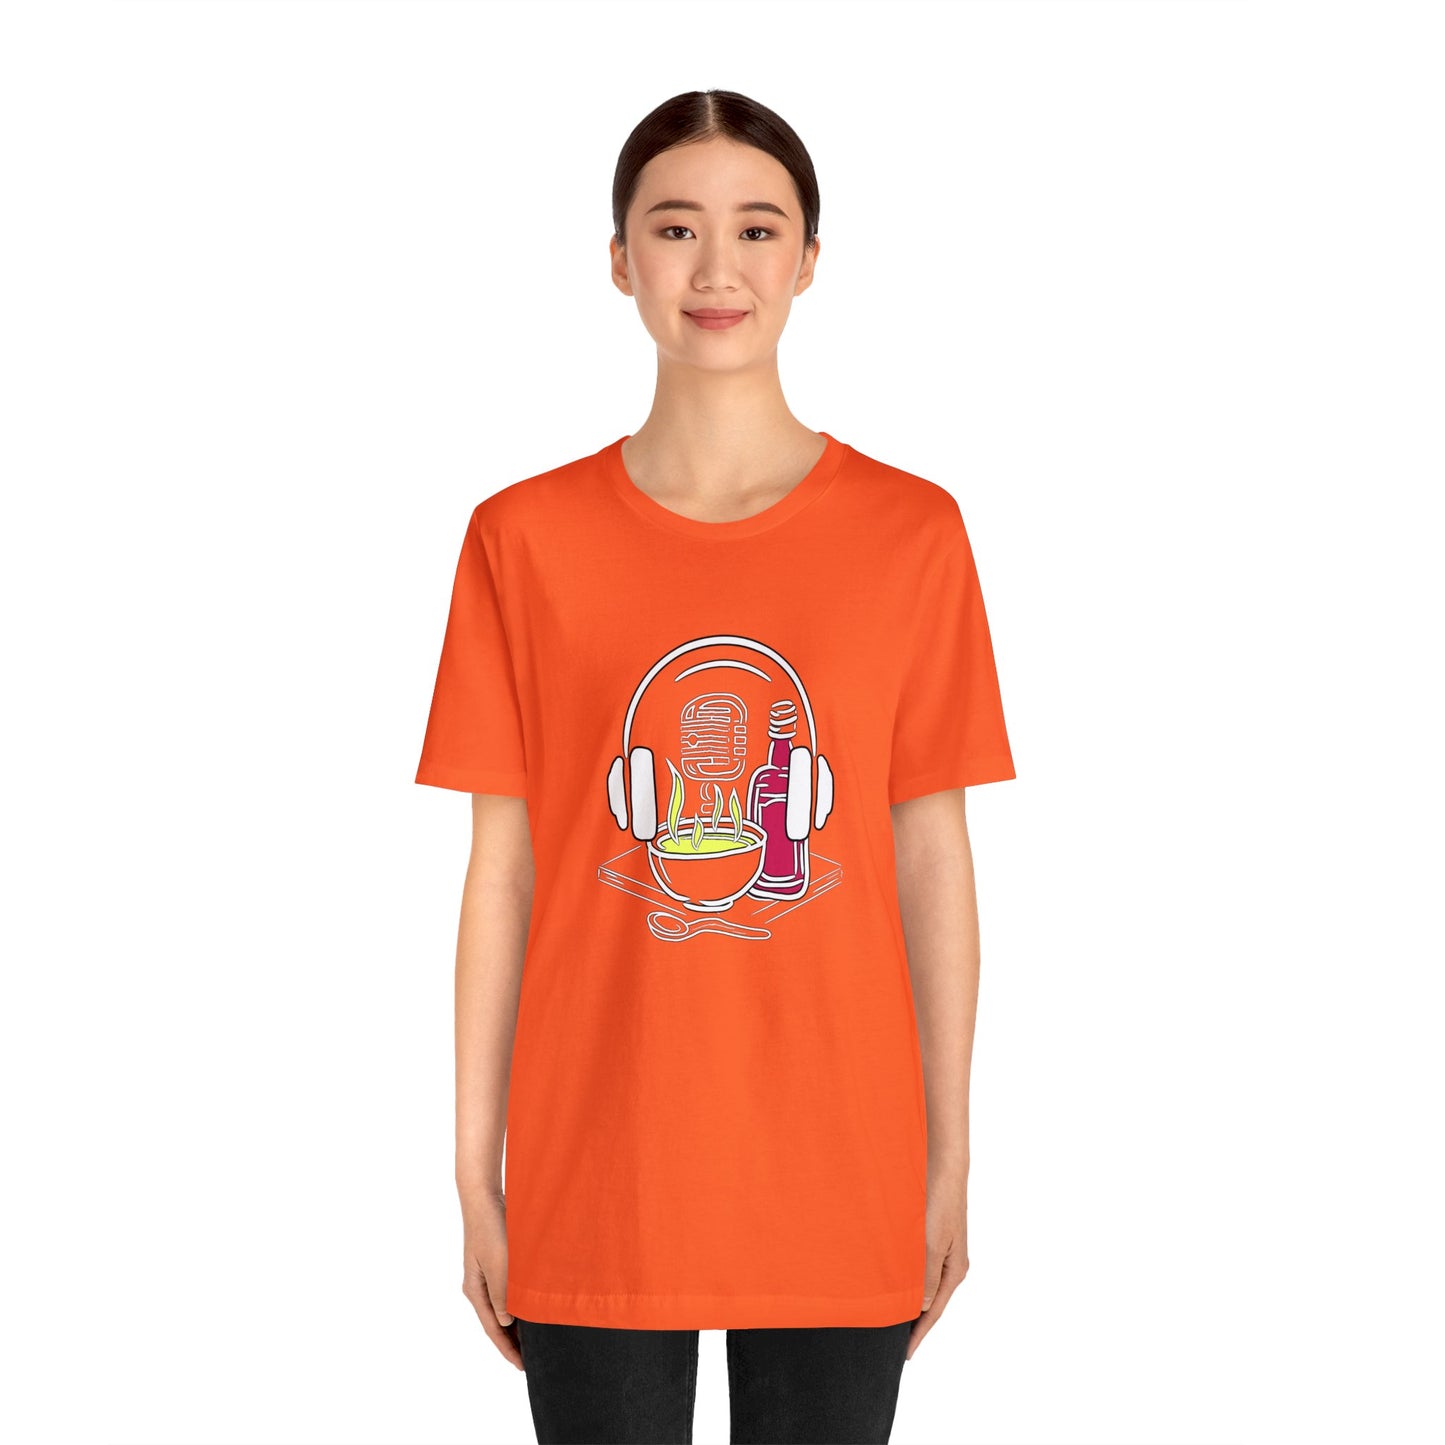 Schwefelsuppe & Himbeergeist Unisex T-Shirt in allen Farben